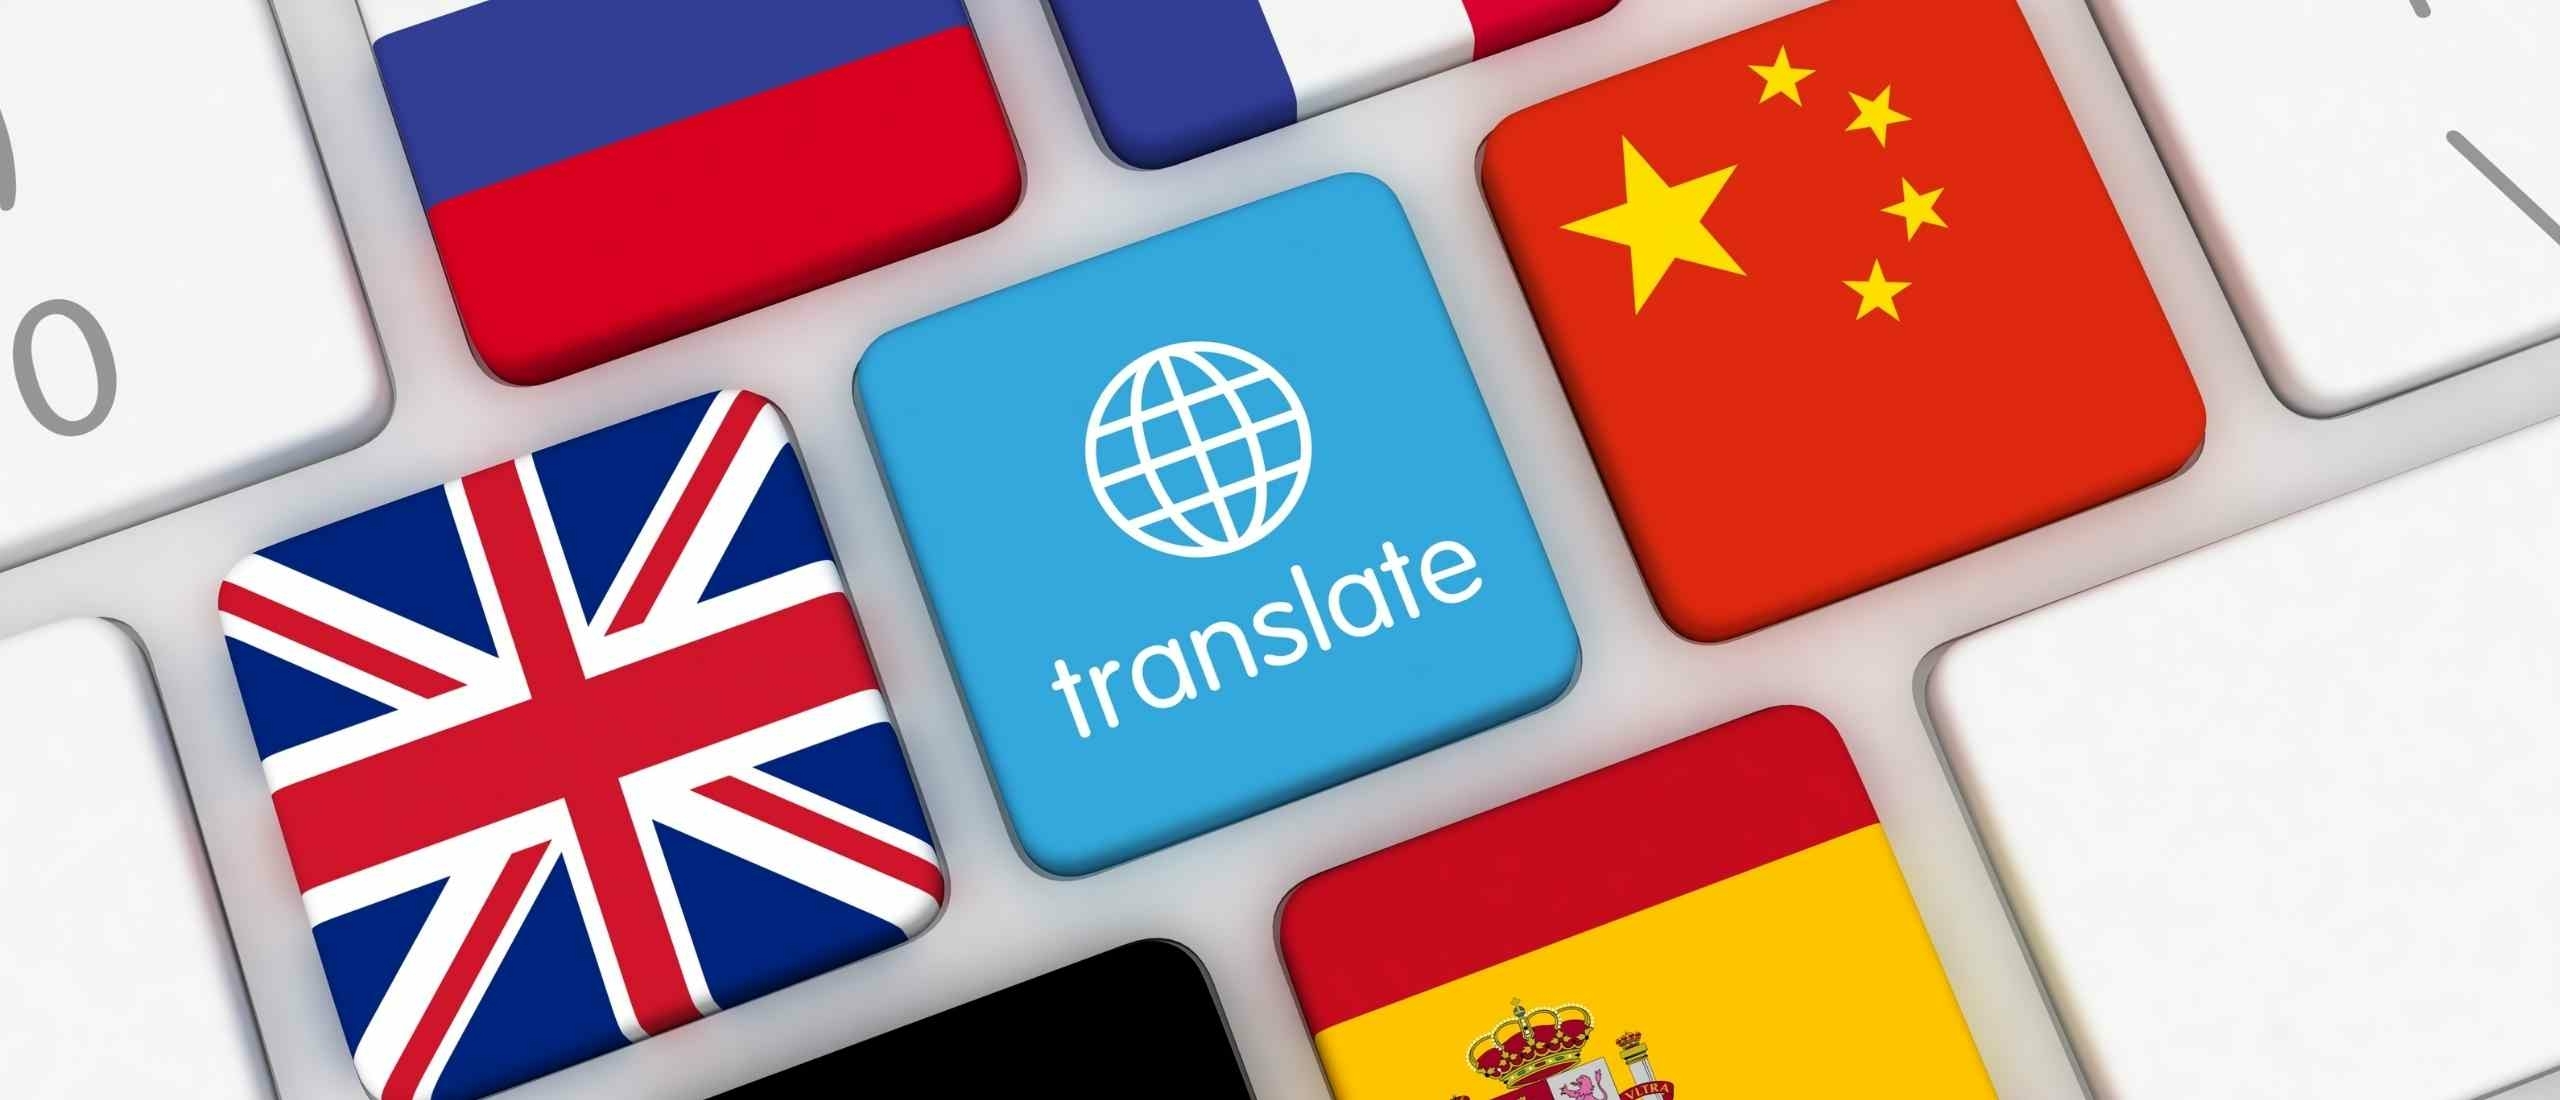 WordPress vertalen: met een plug-in of menselijke vertaler?